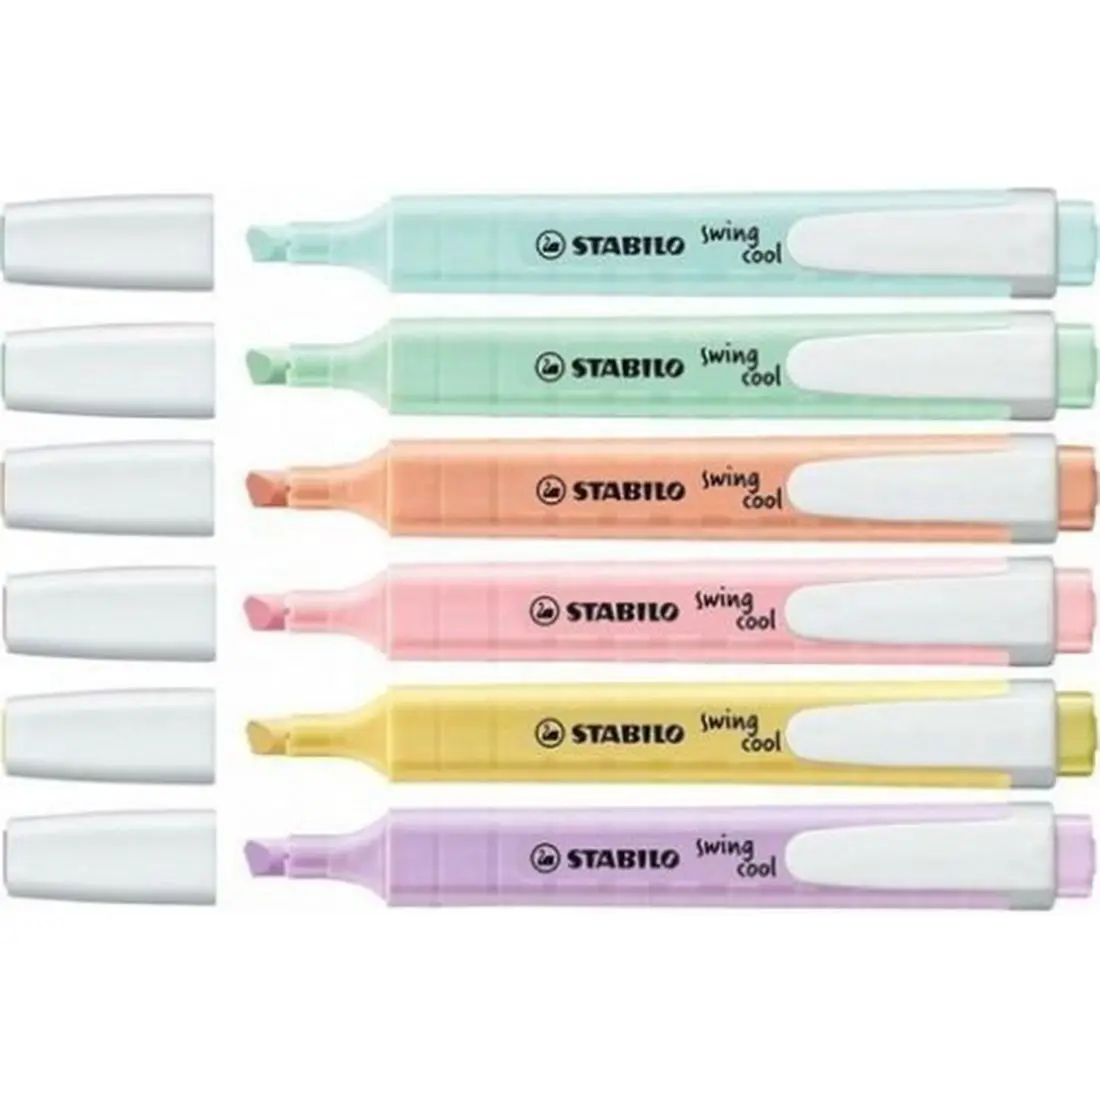 Stabilo swing legal 6 pces pastel marcação caneta com clipe prático e design plano, tinta à base de água adequada para uso no bolso-tamanho